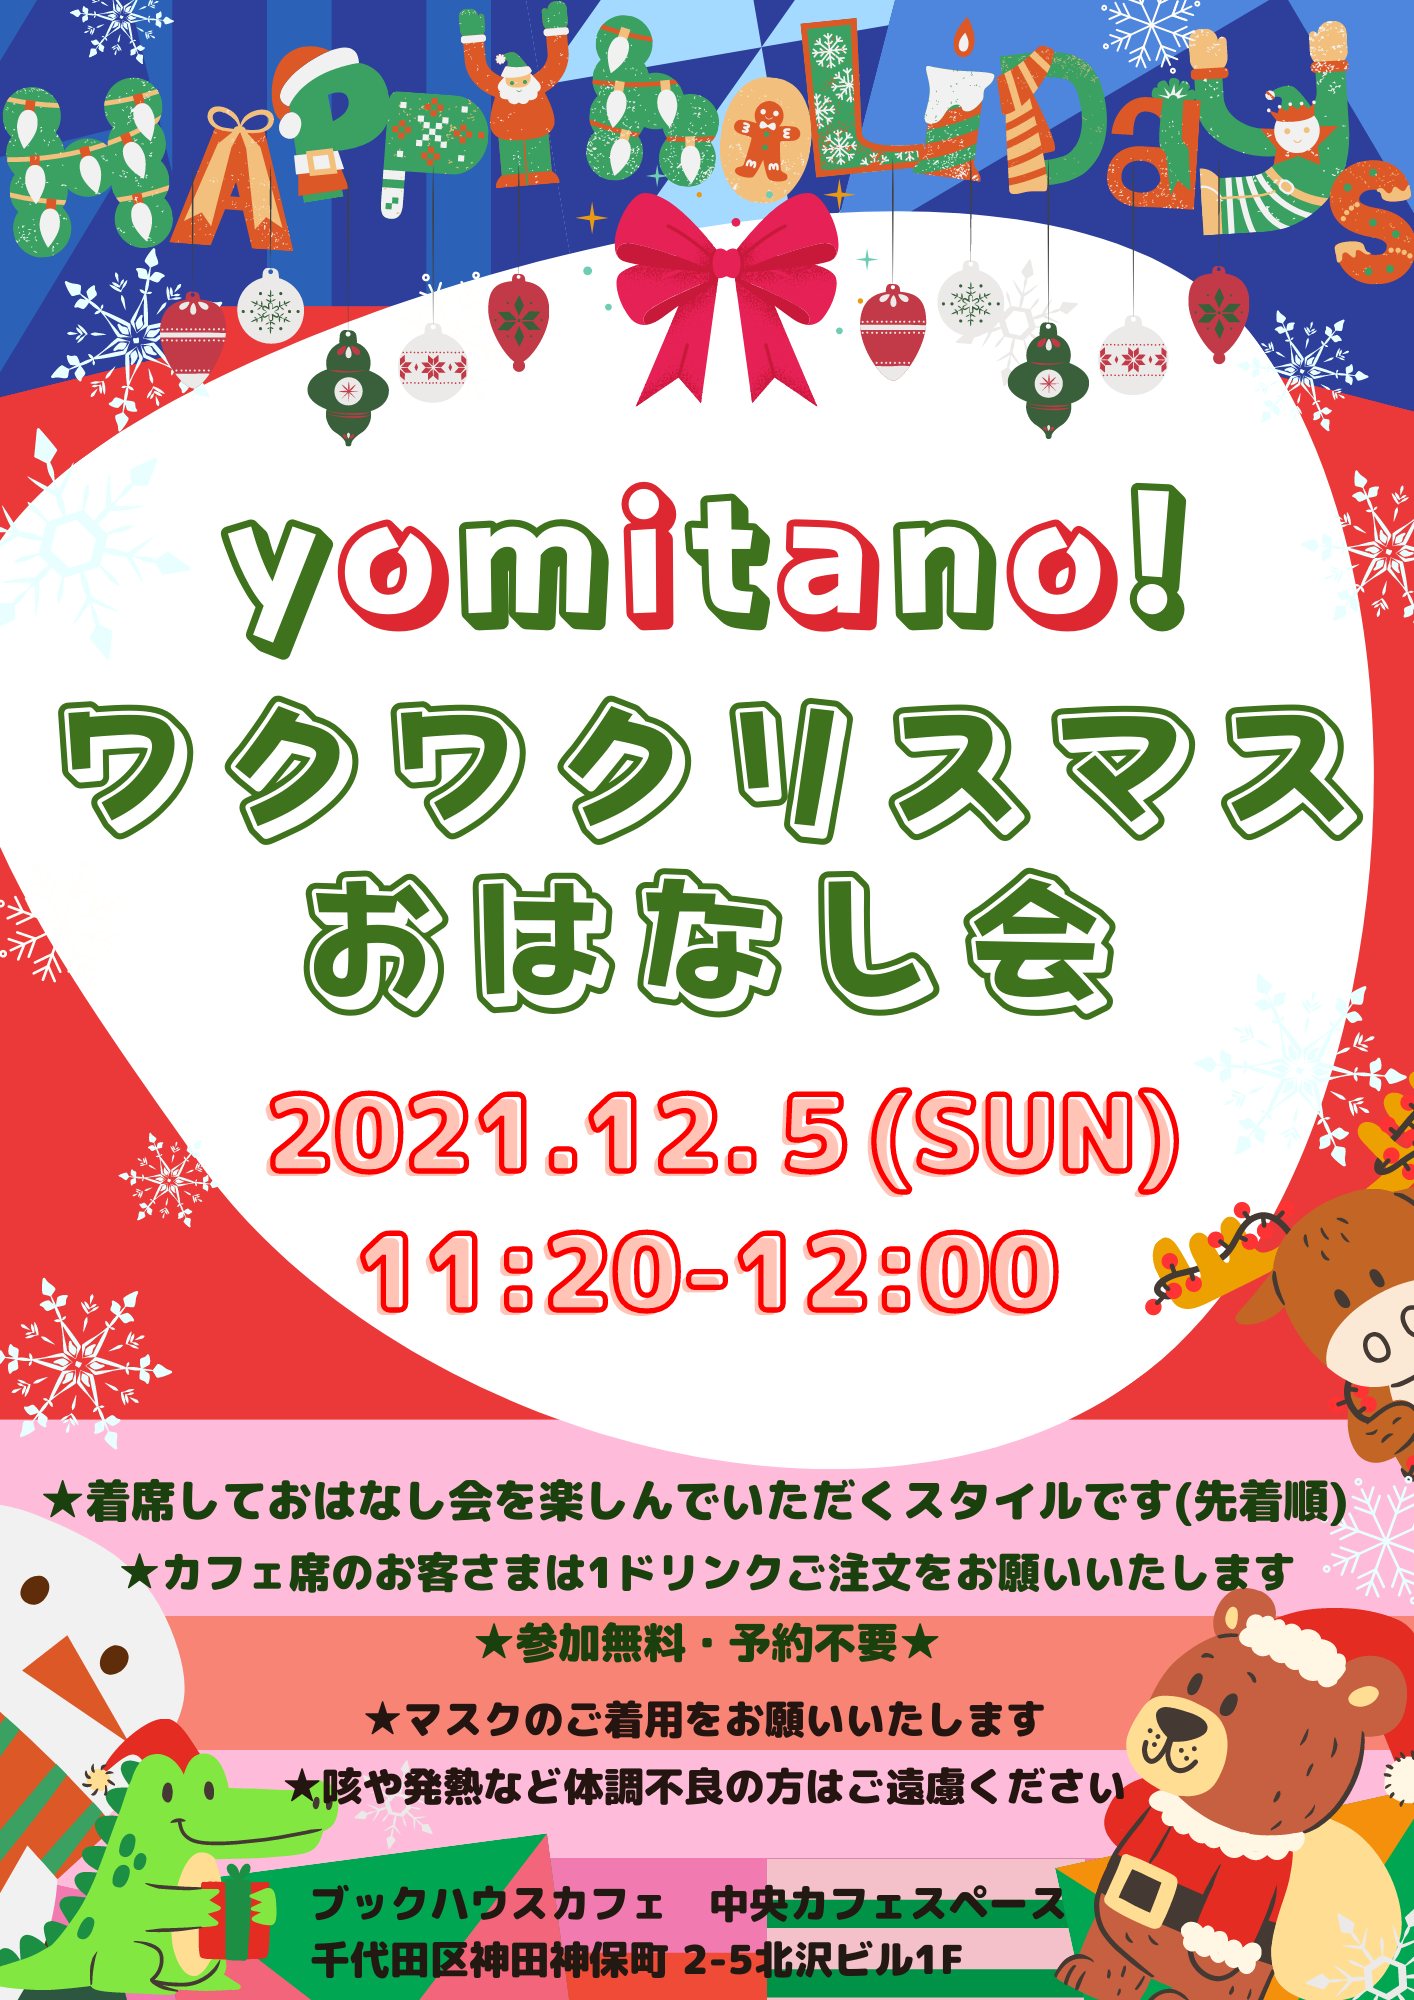 【店頭開催】yomitano！ワクワクリスマスおはなし会